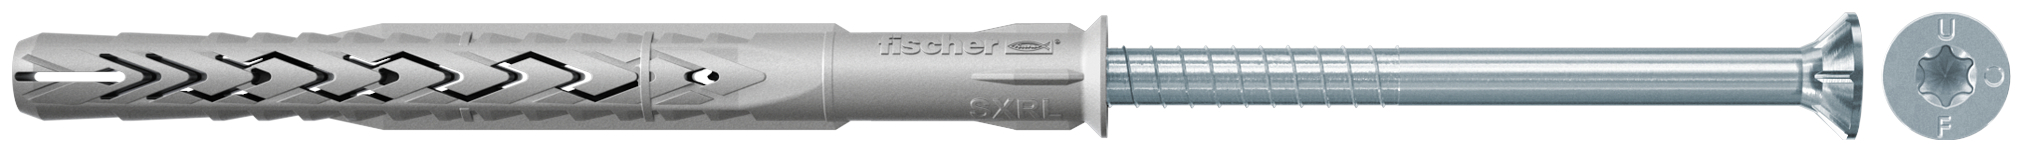 fischer Tasselli prolungati SXRL 14X300 T (1 Pz.) Tassello prolungato in nylon con marcatura CE con vite premontata T.S.P. impronta torx.